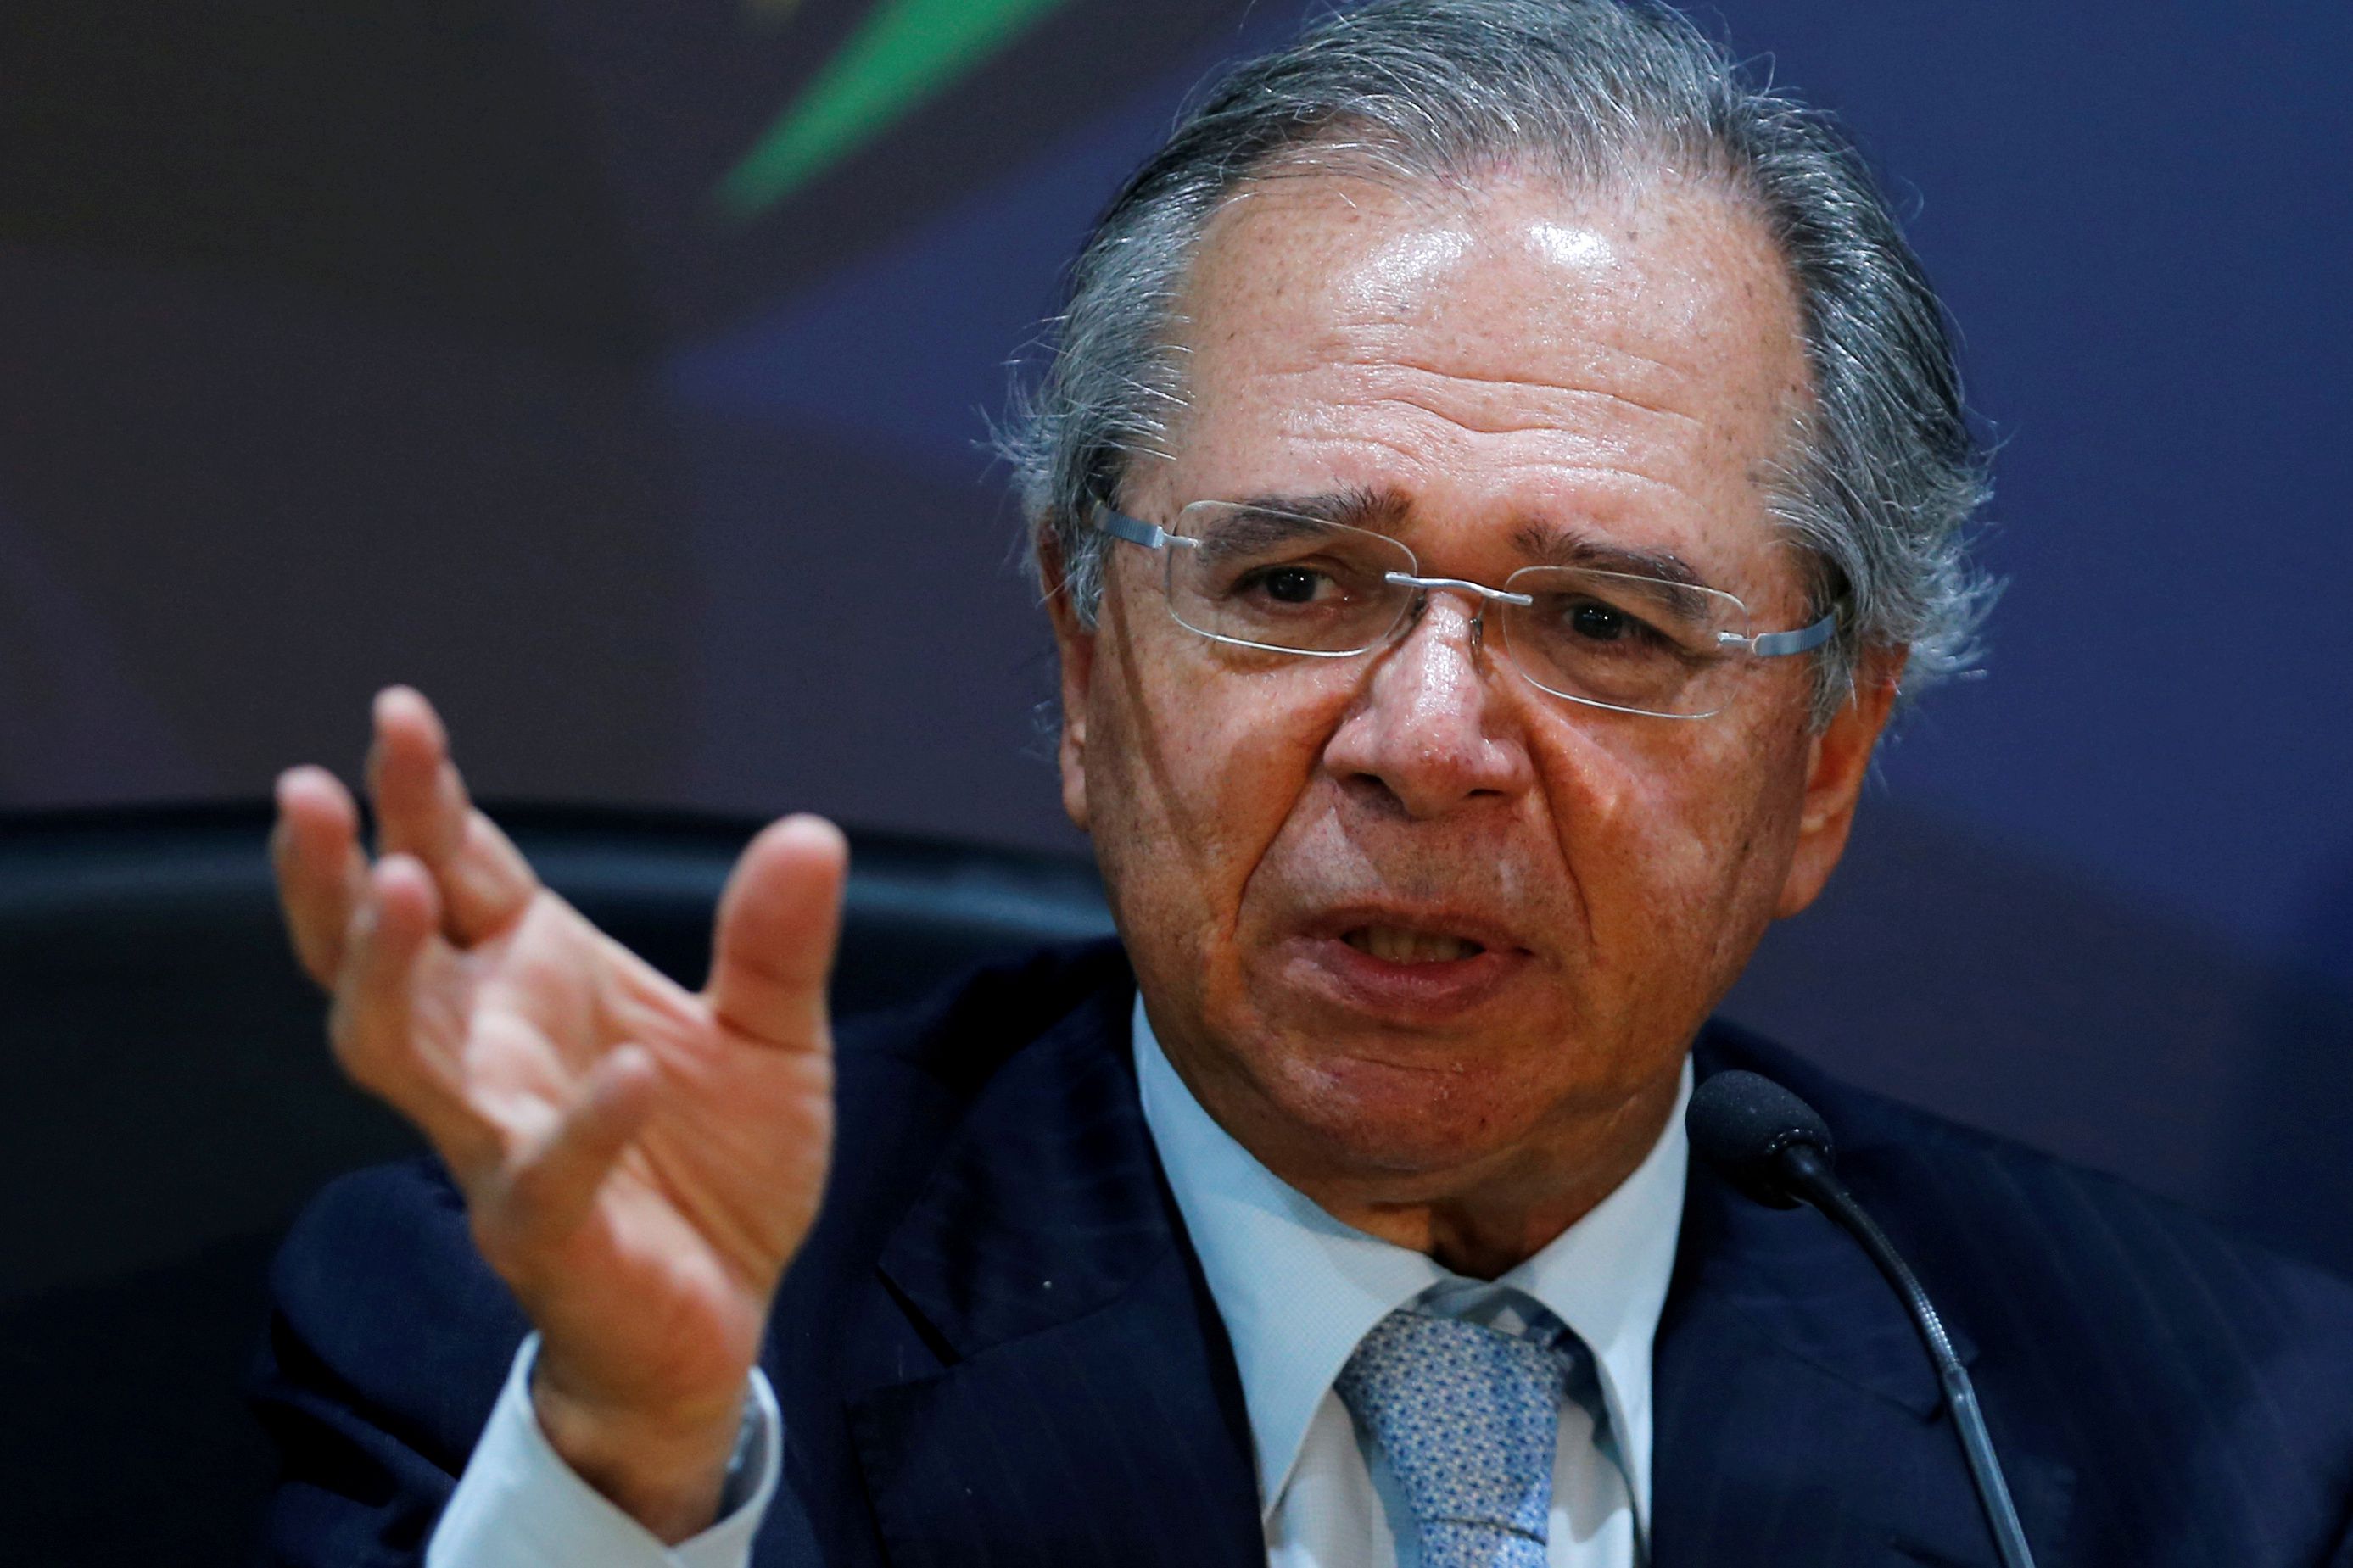 El ministro de Hacienda de Brasil, Paulo Guedes, sostuvo luego del triunfo de Jair Bolsonaro en las elecciones de 2018 que el Mercosur no era una prioridad